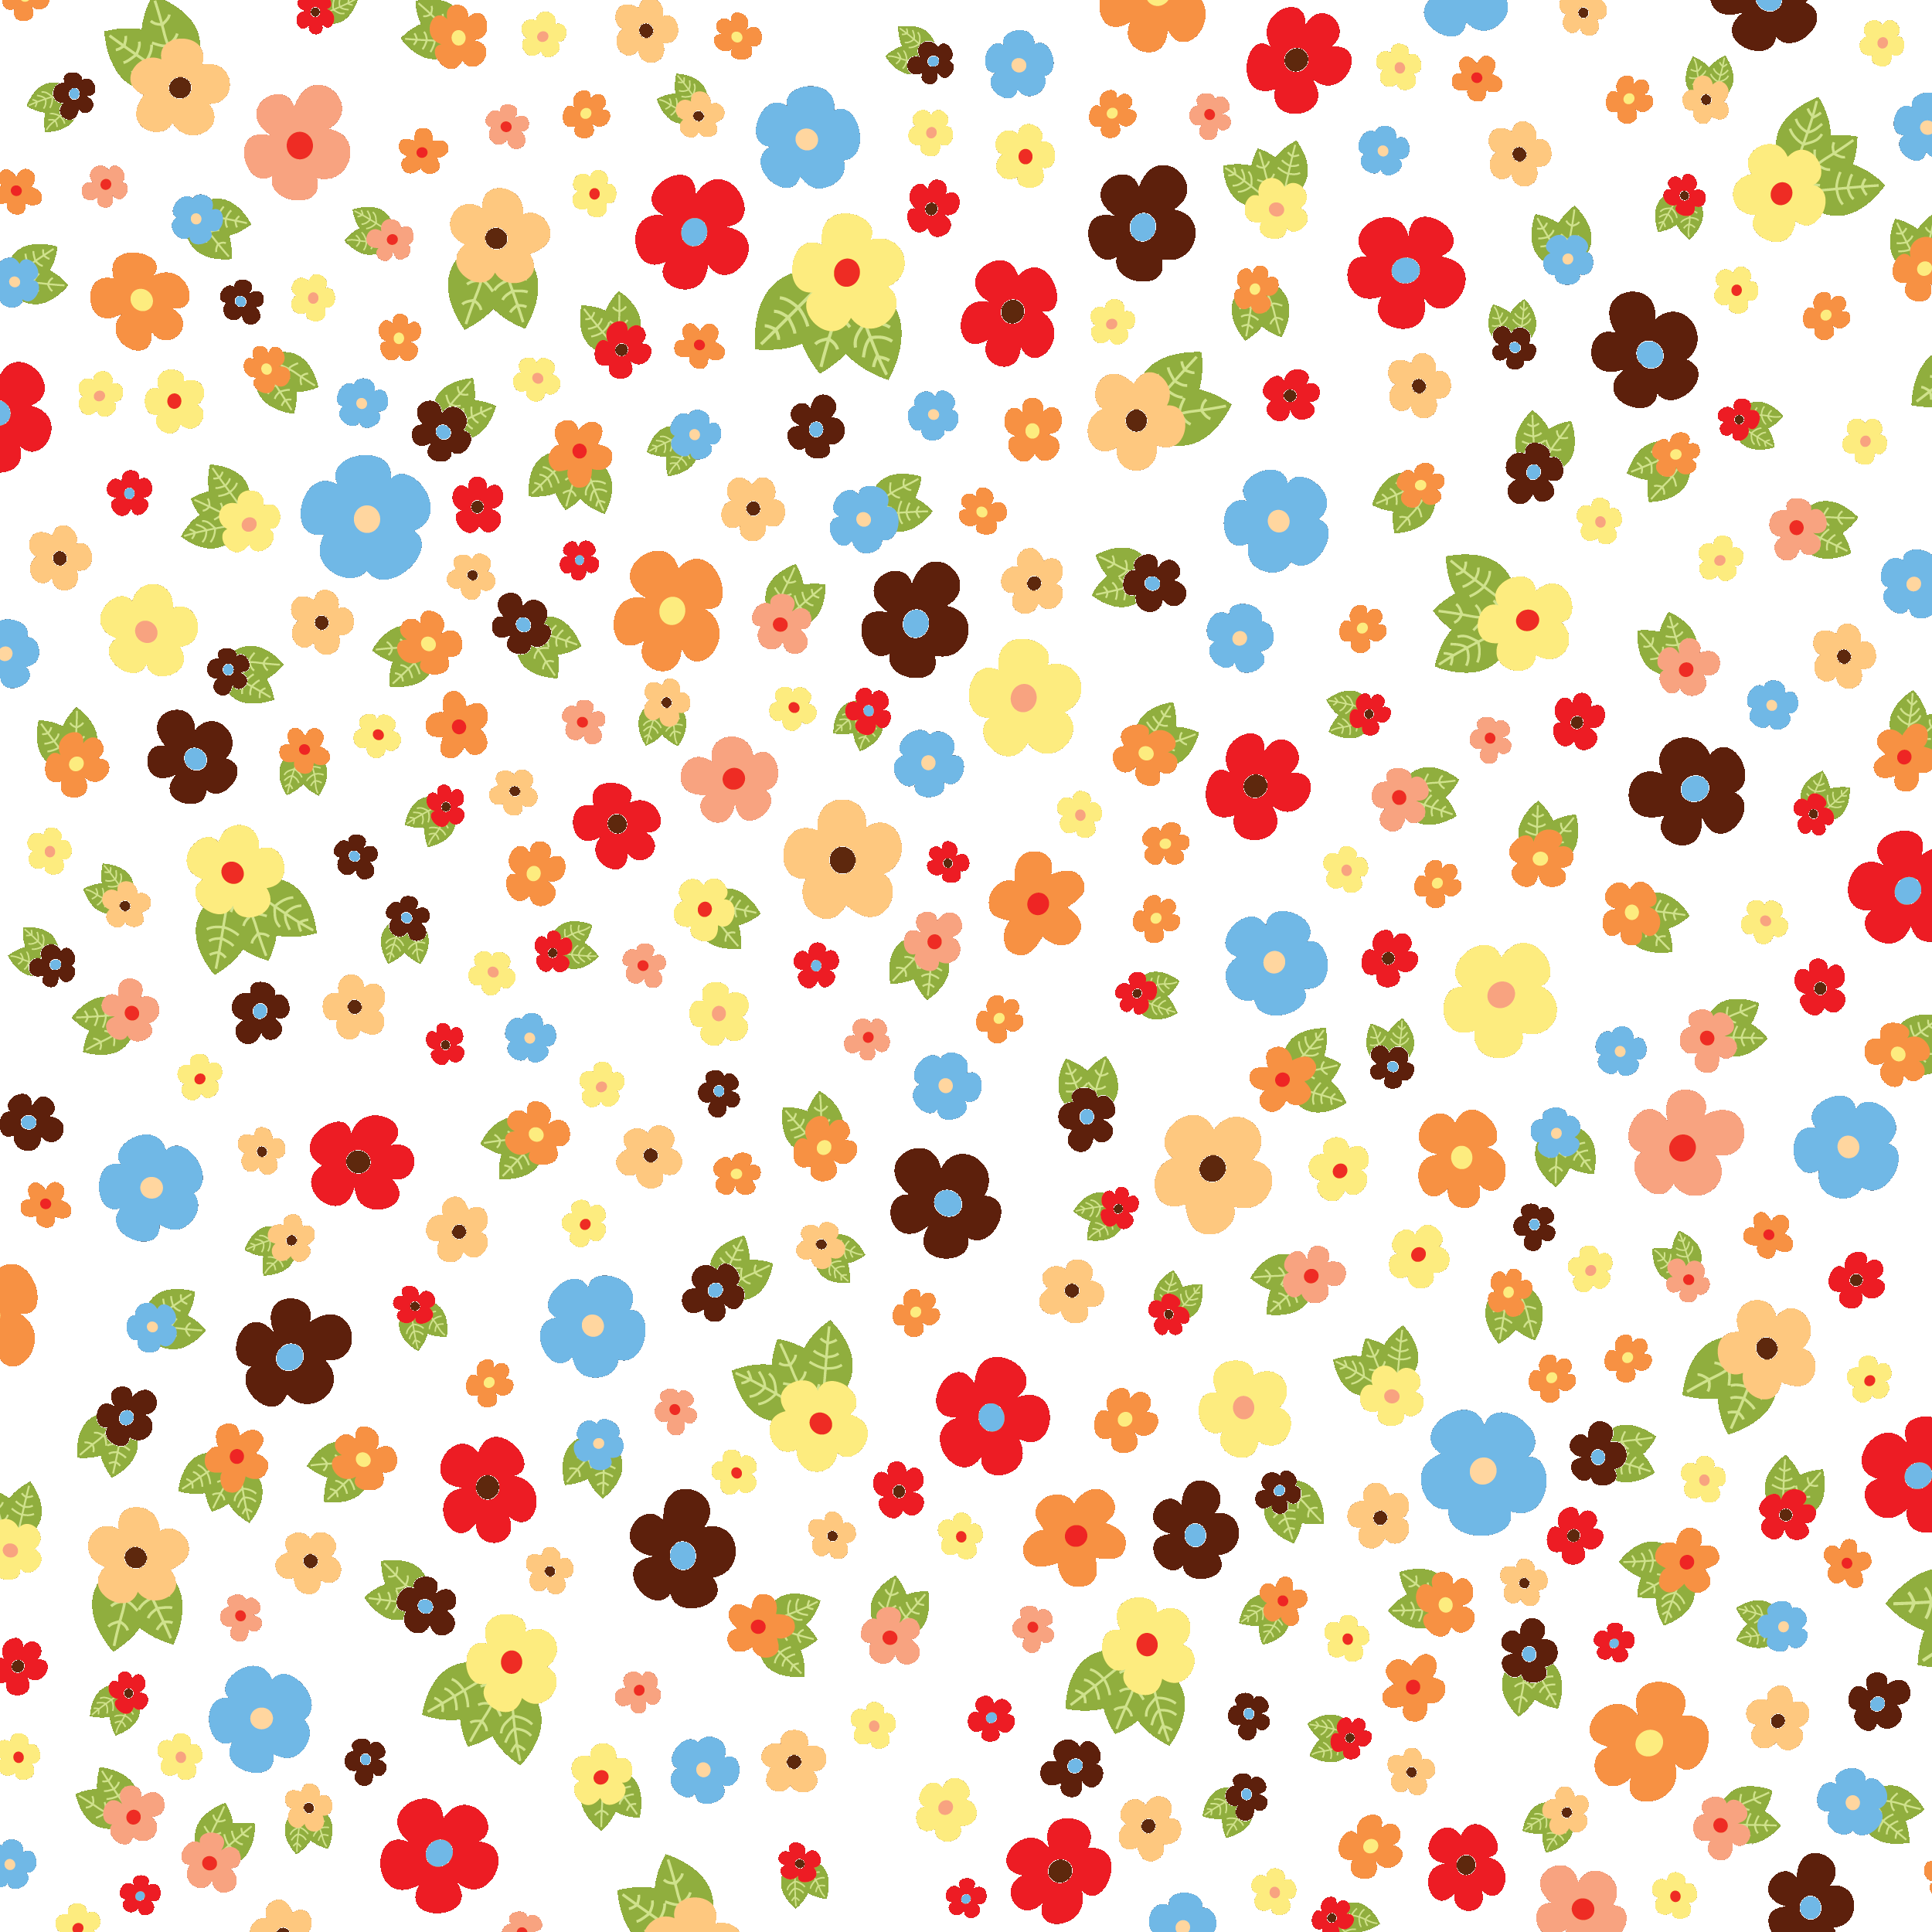 壁紙 背景イラスト 花の模様 柄 パターン No 078 カラフル 透明